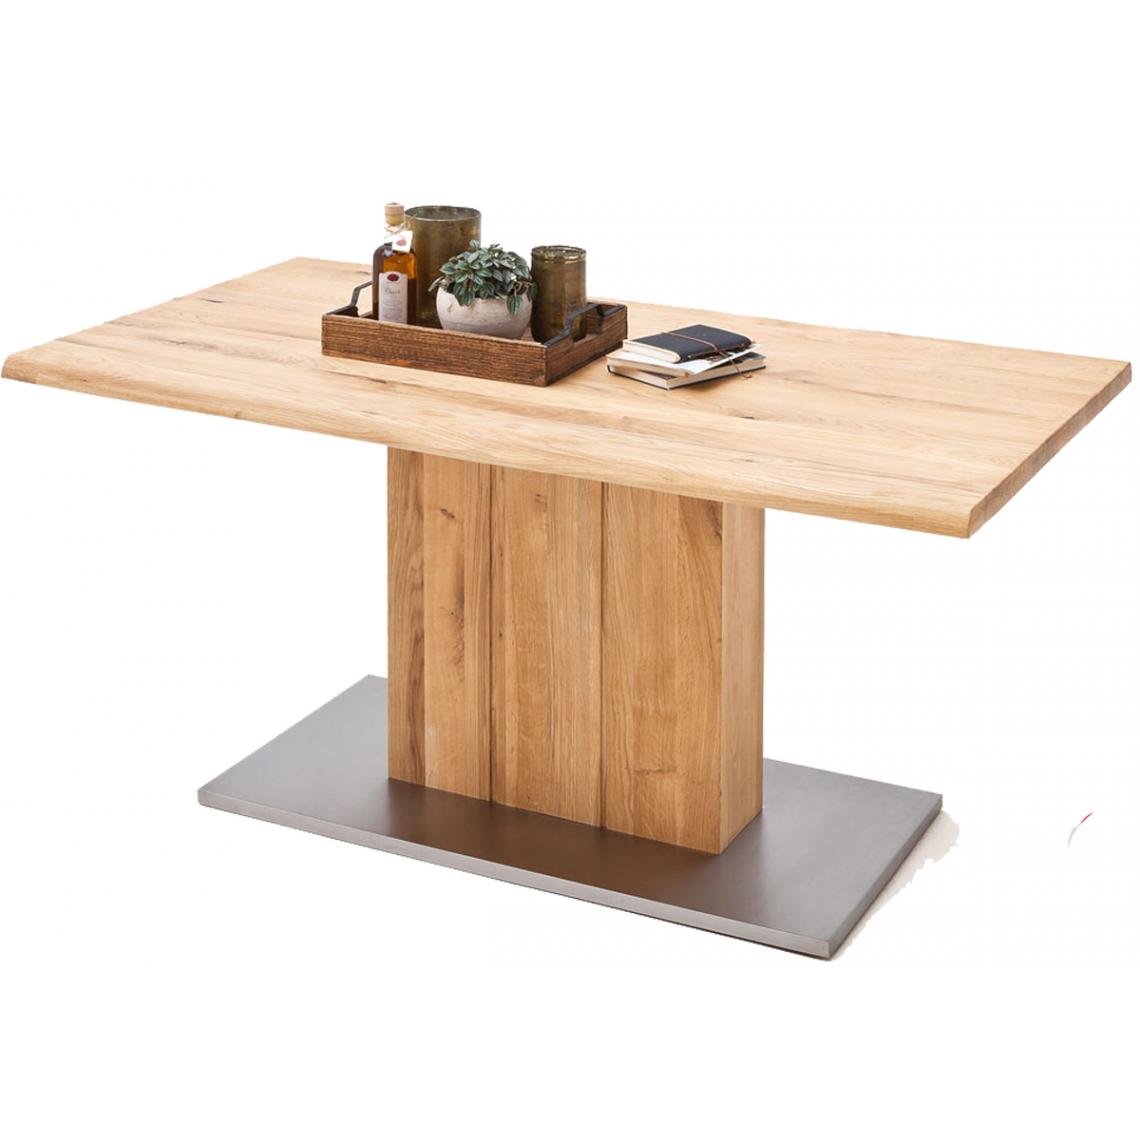 Pegane - Table à manger en chêne massif huilé bord d'arbre - L200 x H77 x P100 cm - Tables à manger